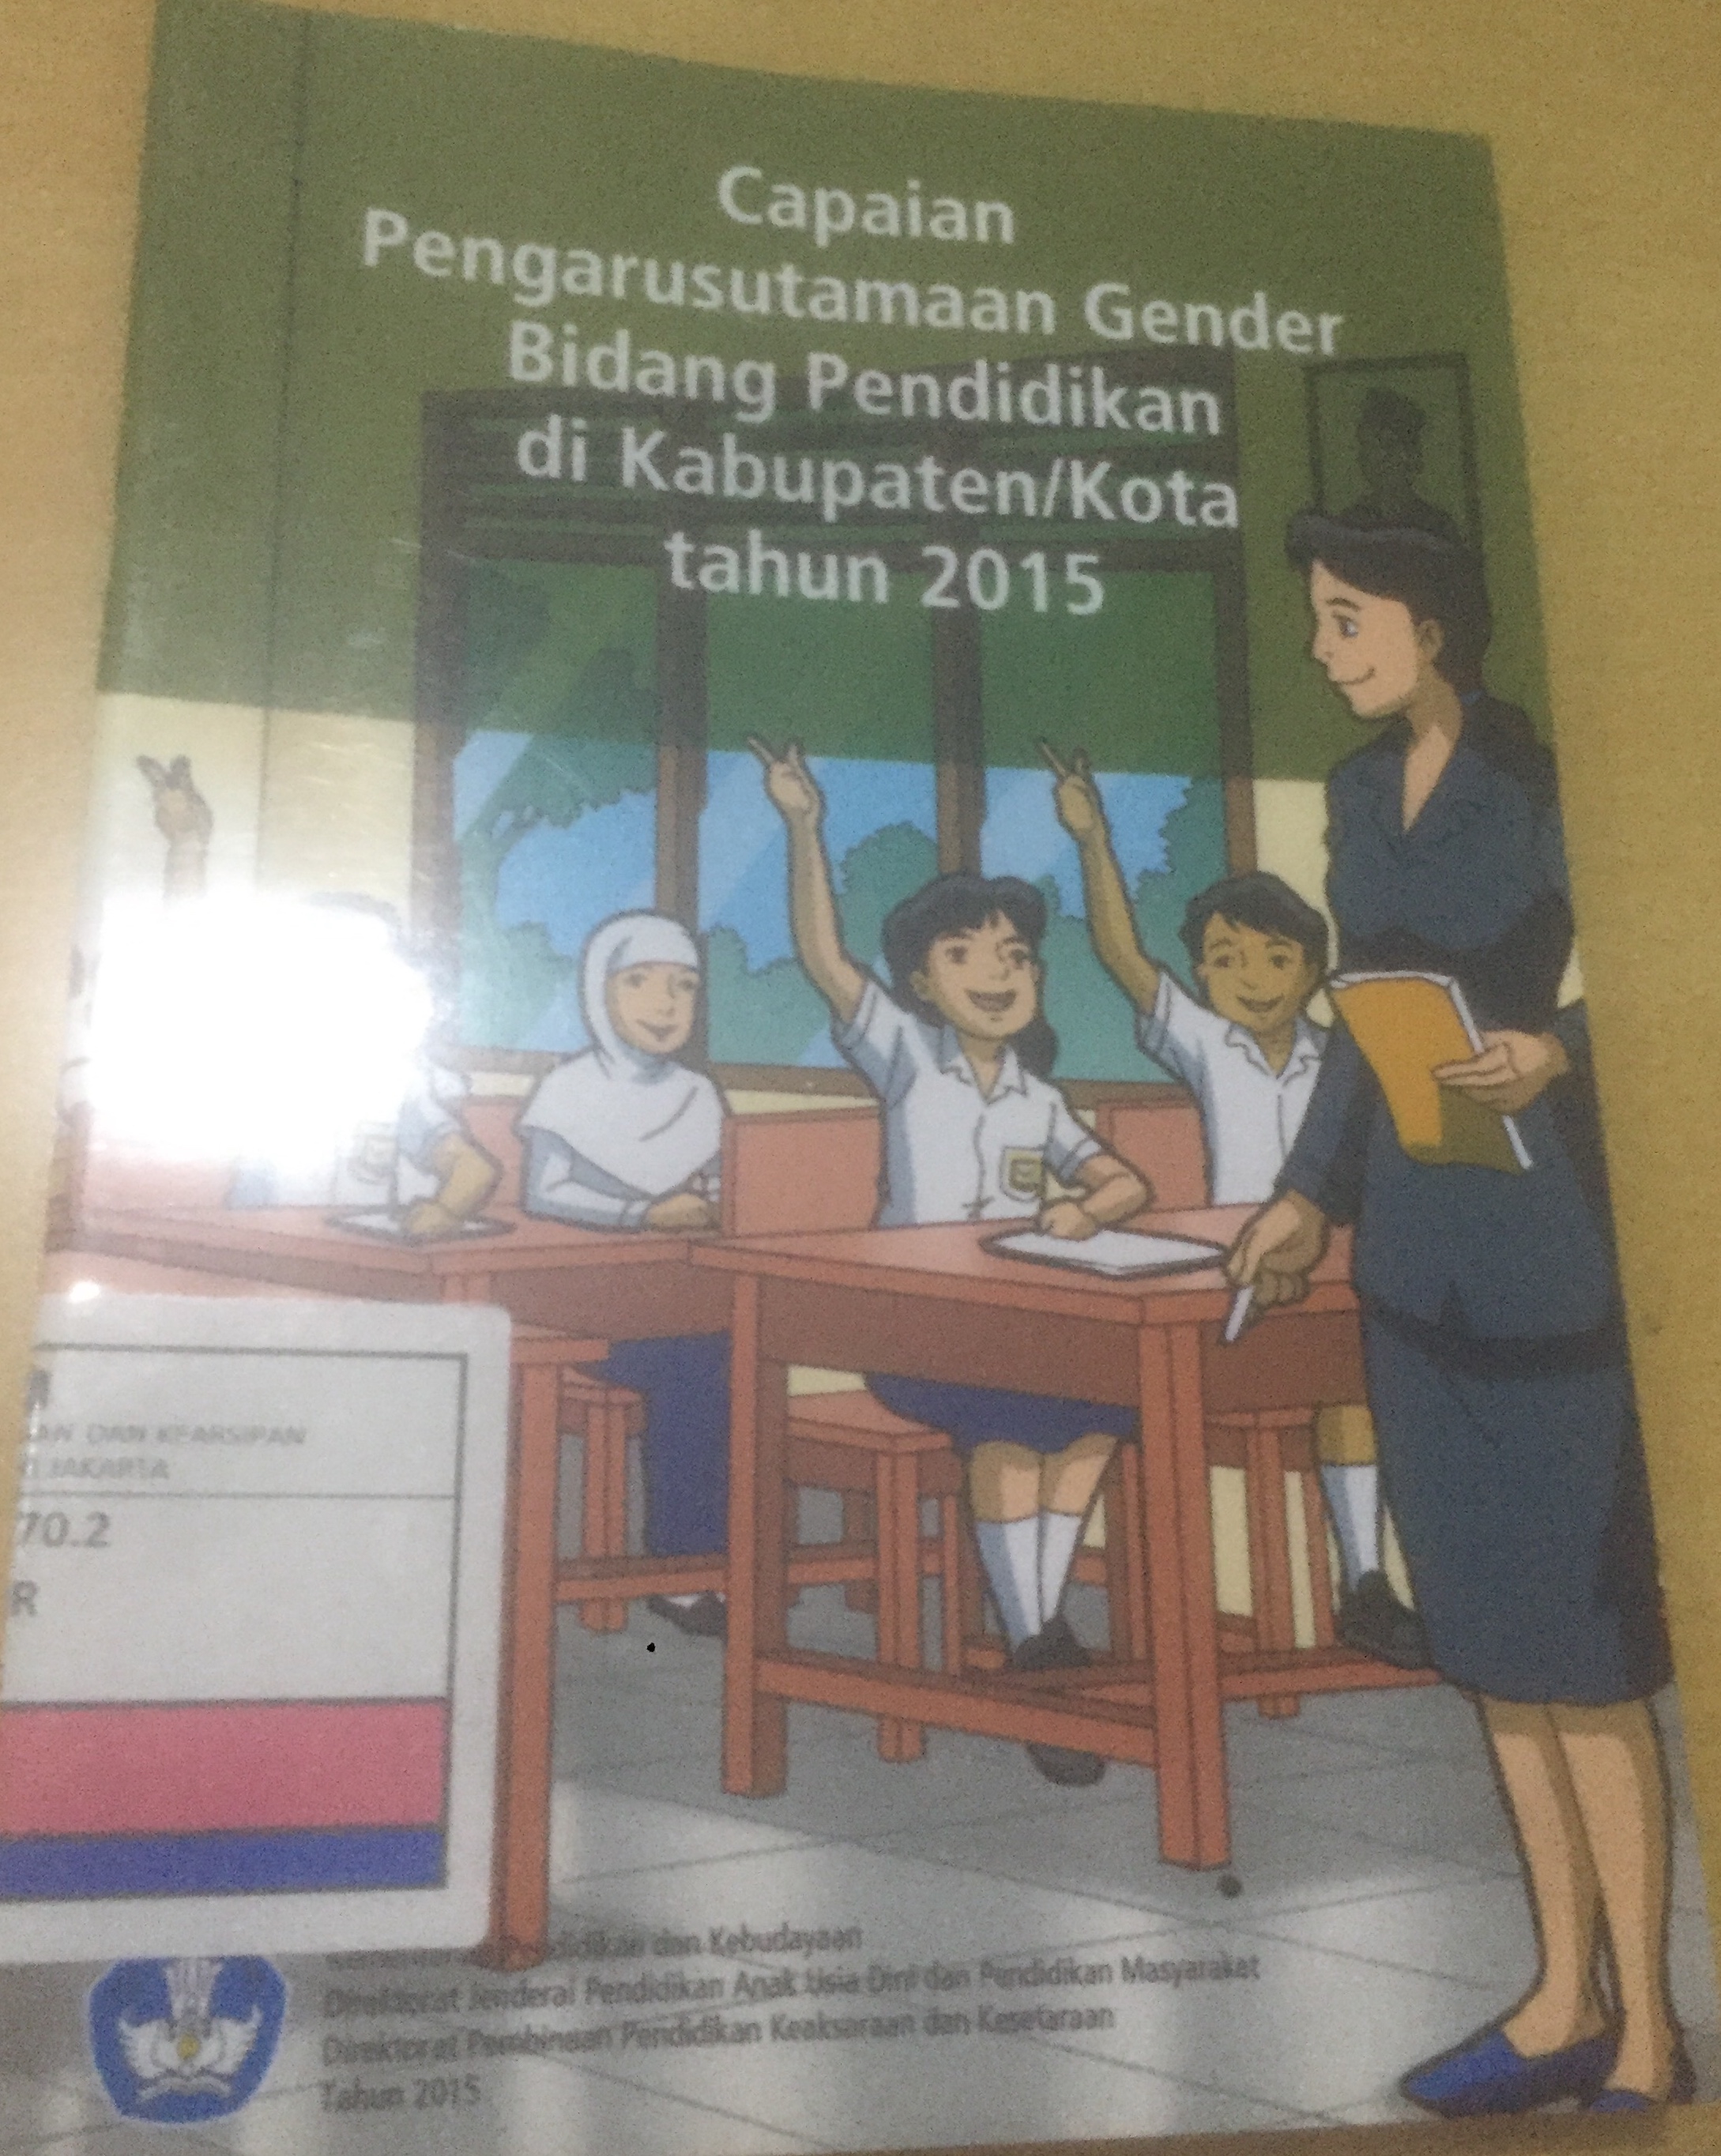 Capaian Pengarustamaan Gender Bidang Pendidikan di Kabupaten/Kota Tahun 2015